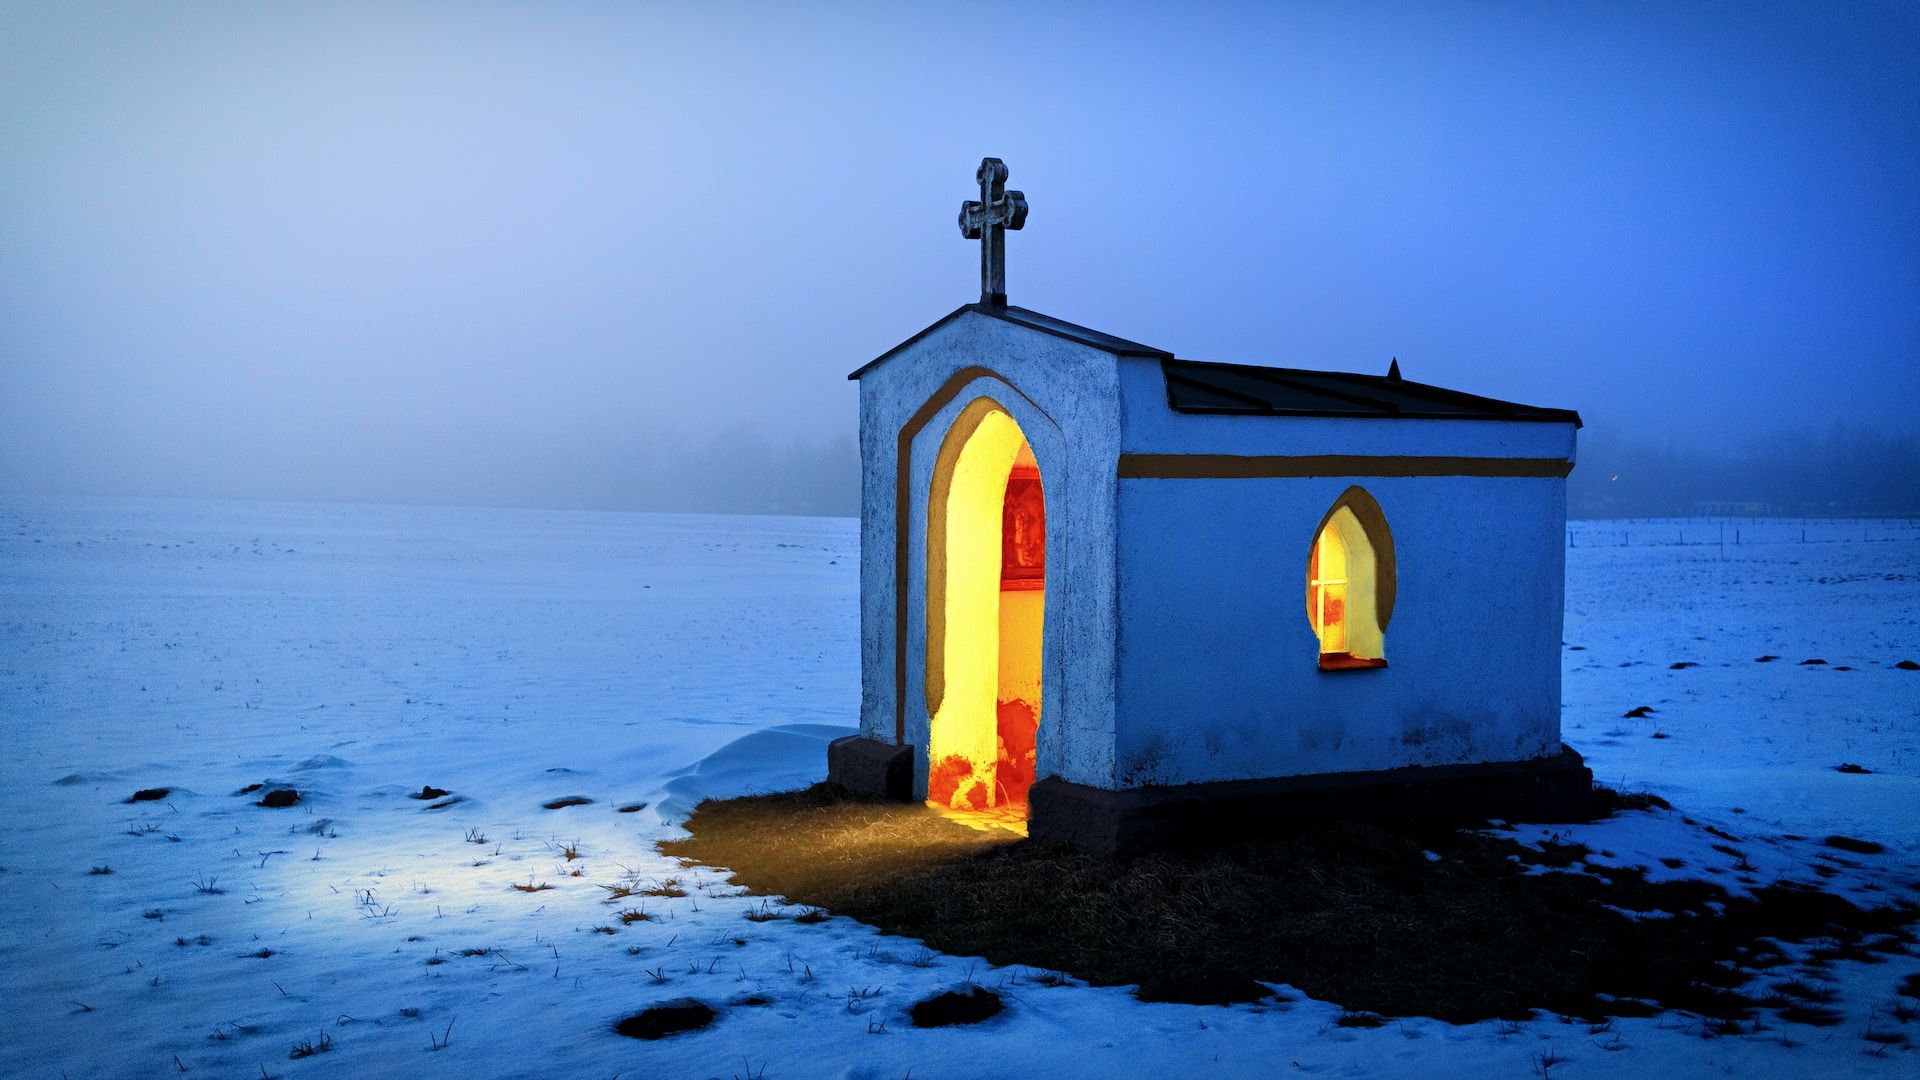 minuscule chapelle éclairée de l'intérieur dans le crépuscule et la neige - Photo by Johannes Plenio on https://unsplash.com/fr/photos/eglise-en-beton-blanc-et-noir-en-hiver-xuibQCRN2WU